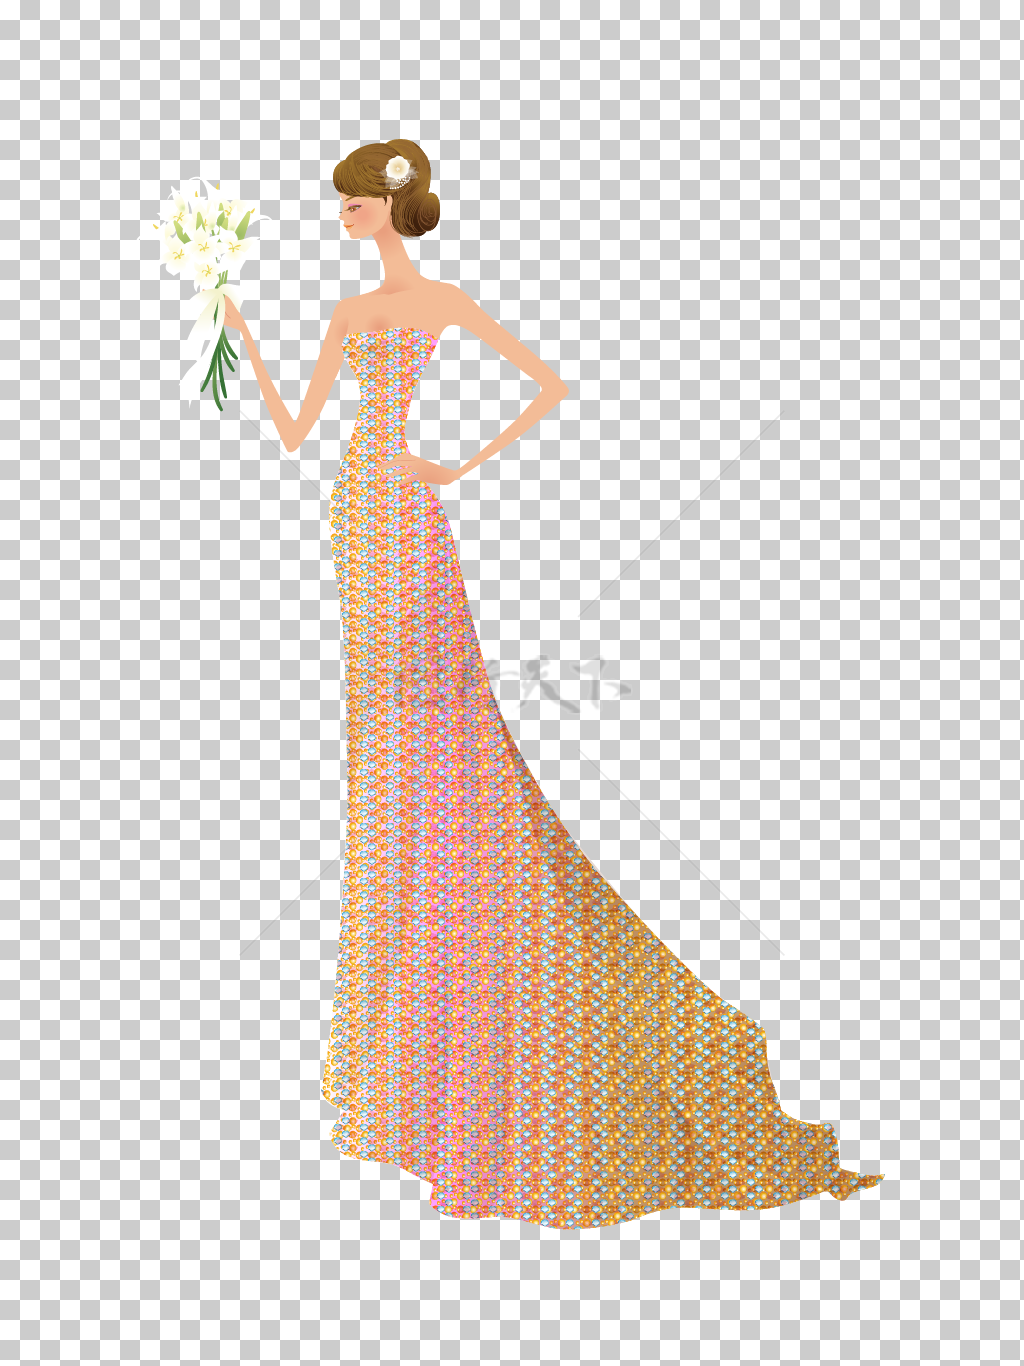 穿着婚纱拿着花束的美女新娘矢量图插画素材